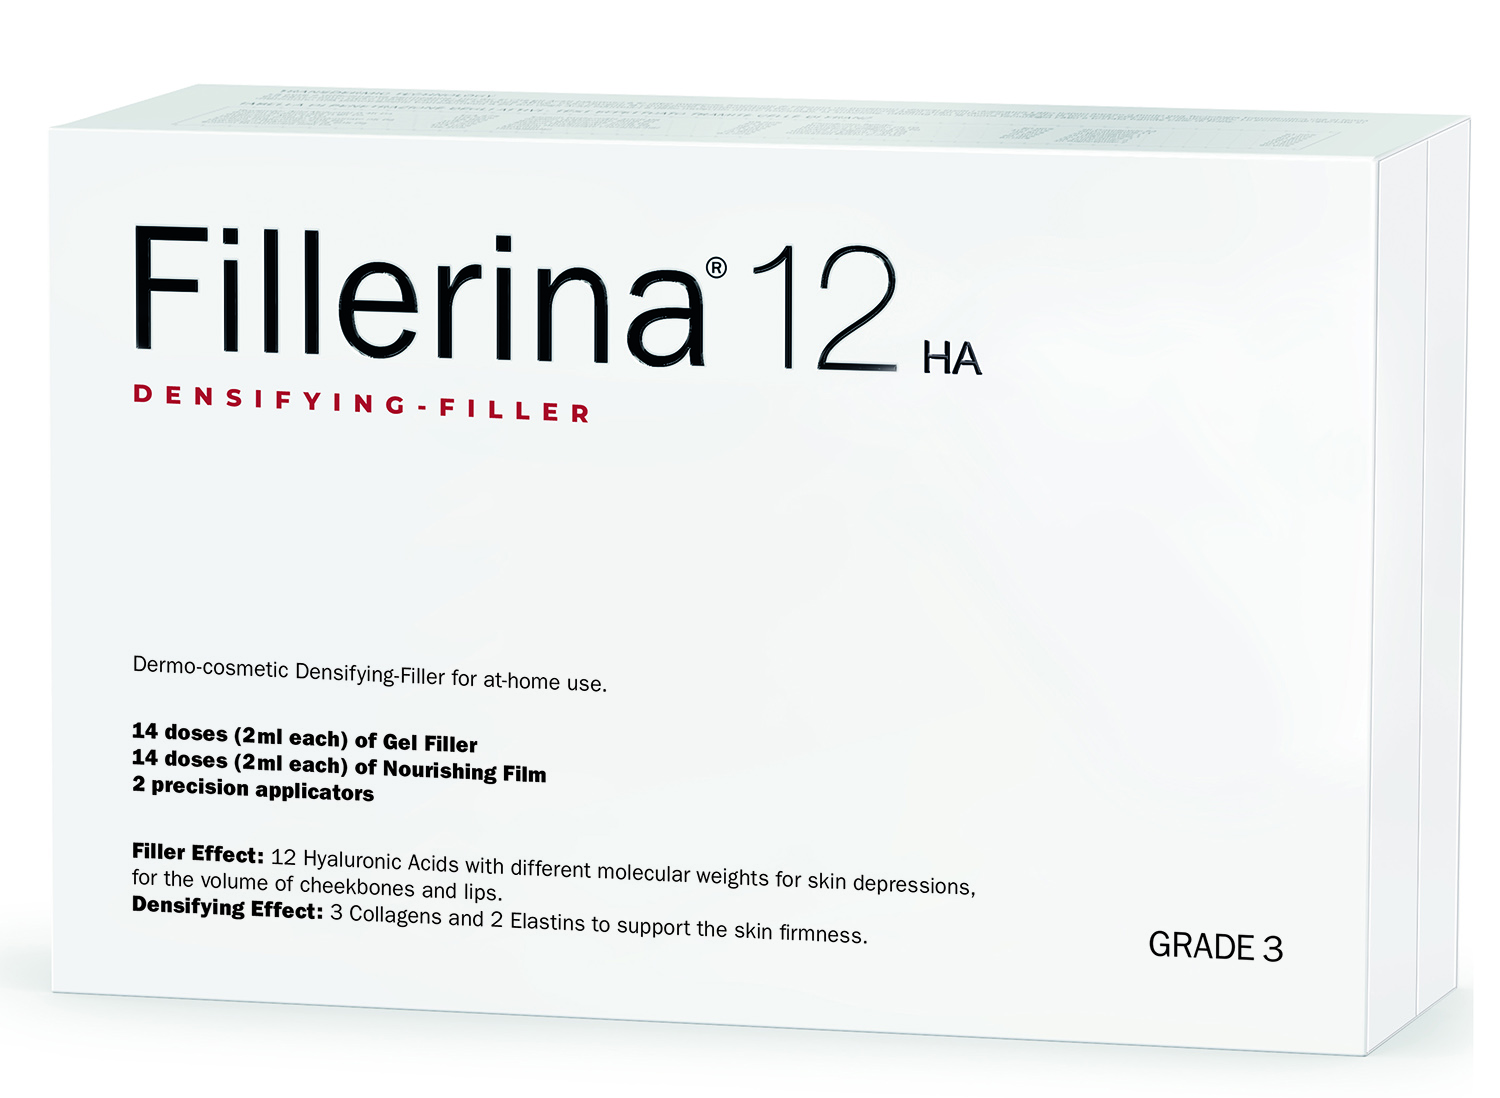 дермо косметический набор с укрепляющим эффектом intensive уровень 3 2 флакона х 30 мл Fillerina Дермо-косметический набор с укрепляющим эффектом Intensive уровень 3, 2 флакона х 30 мл (Fillerina, 12 HA Densifying-Filler)